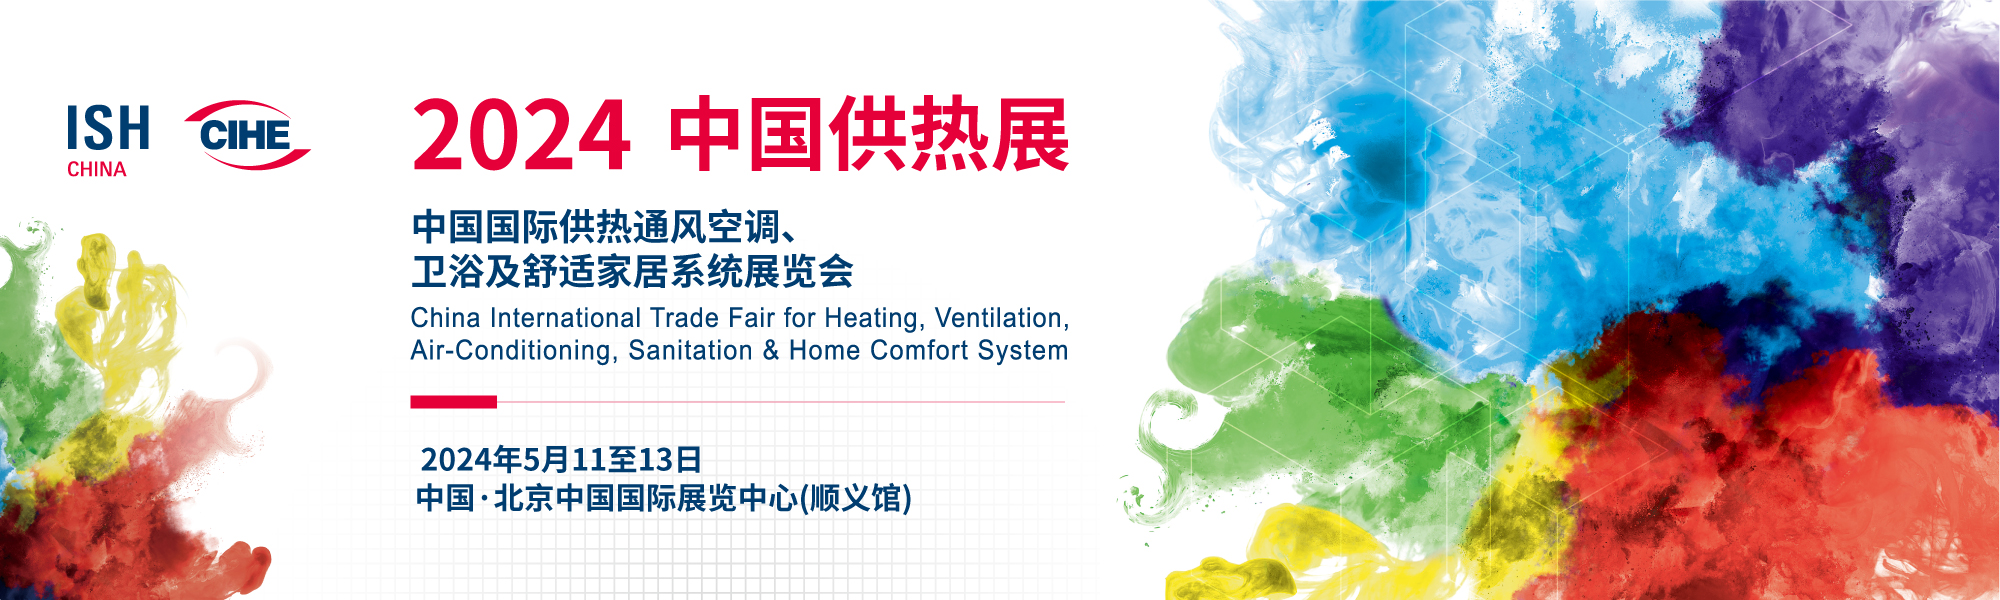 中国国际供热通风空调、卫浴及舒适家居系统展览会